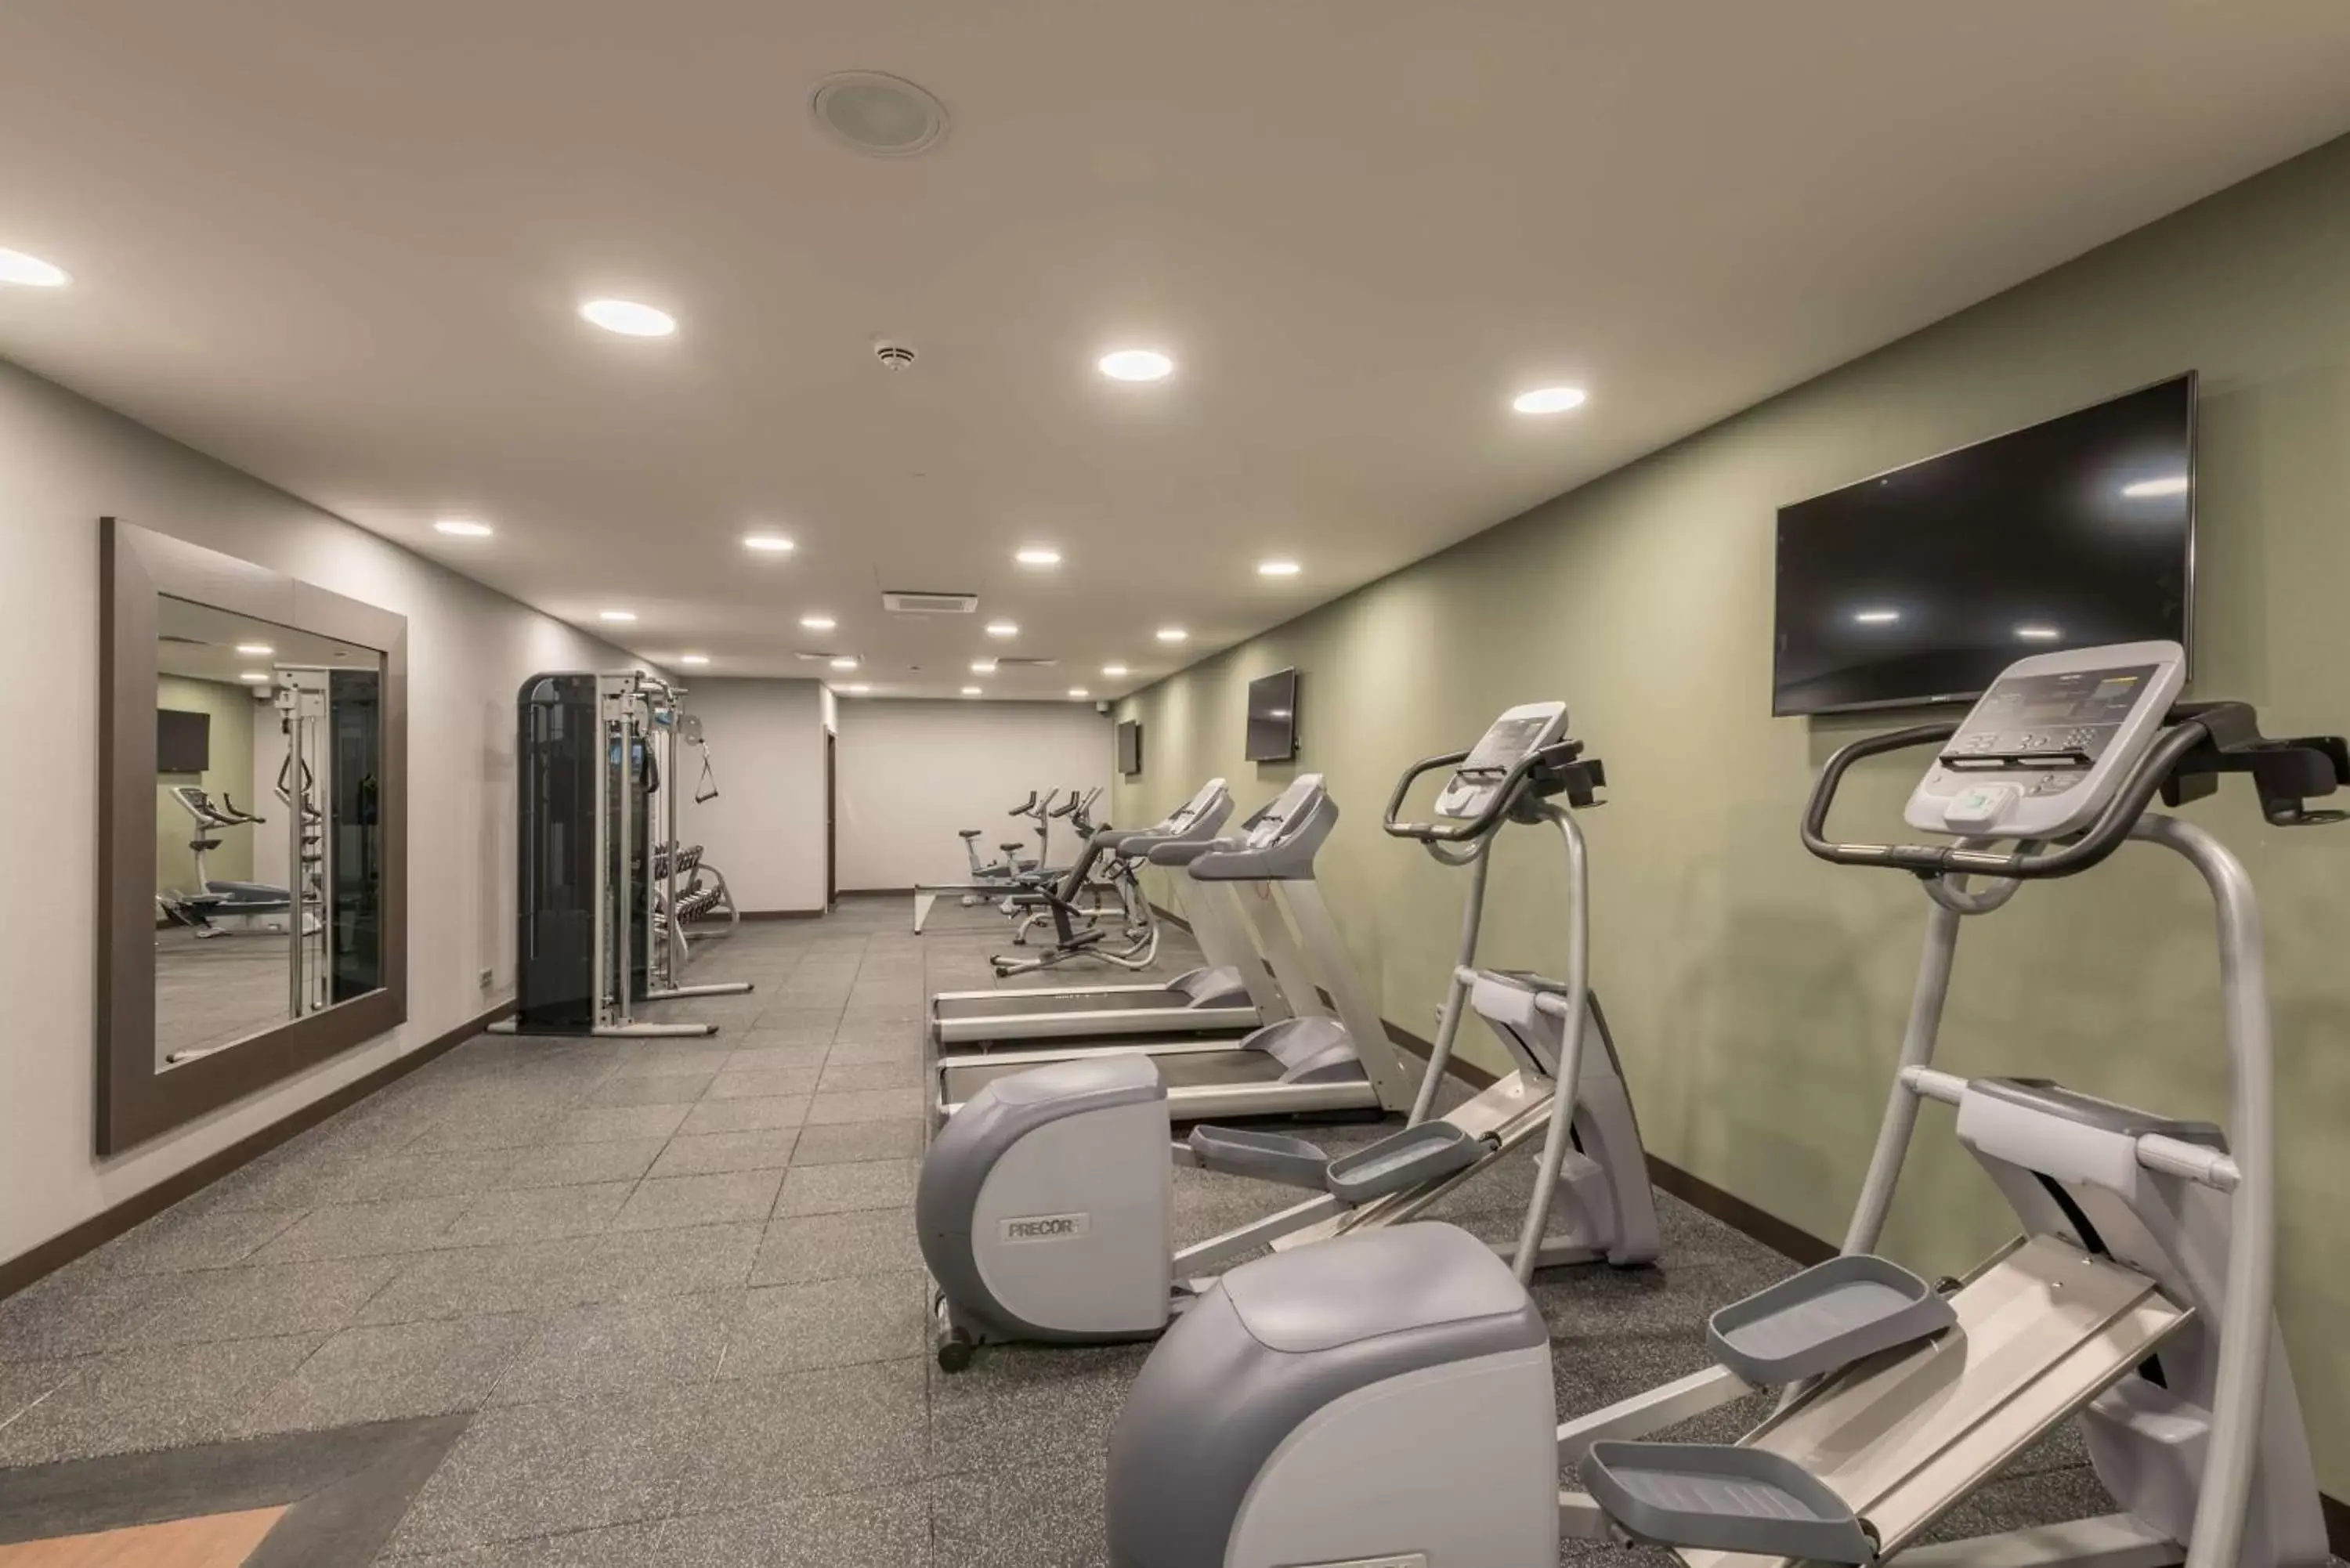 Fitness centre/facilities, Fitness Center/Facilities in Hilton Garden Inn Frankfurt City Centre